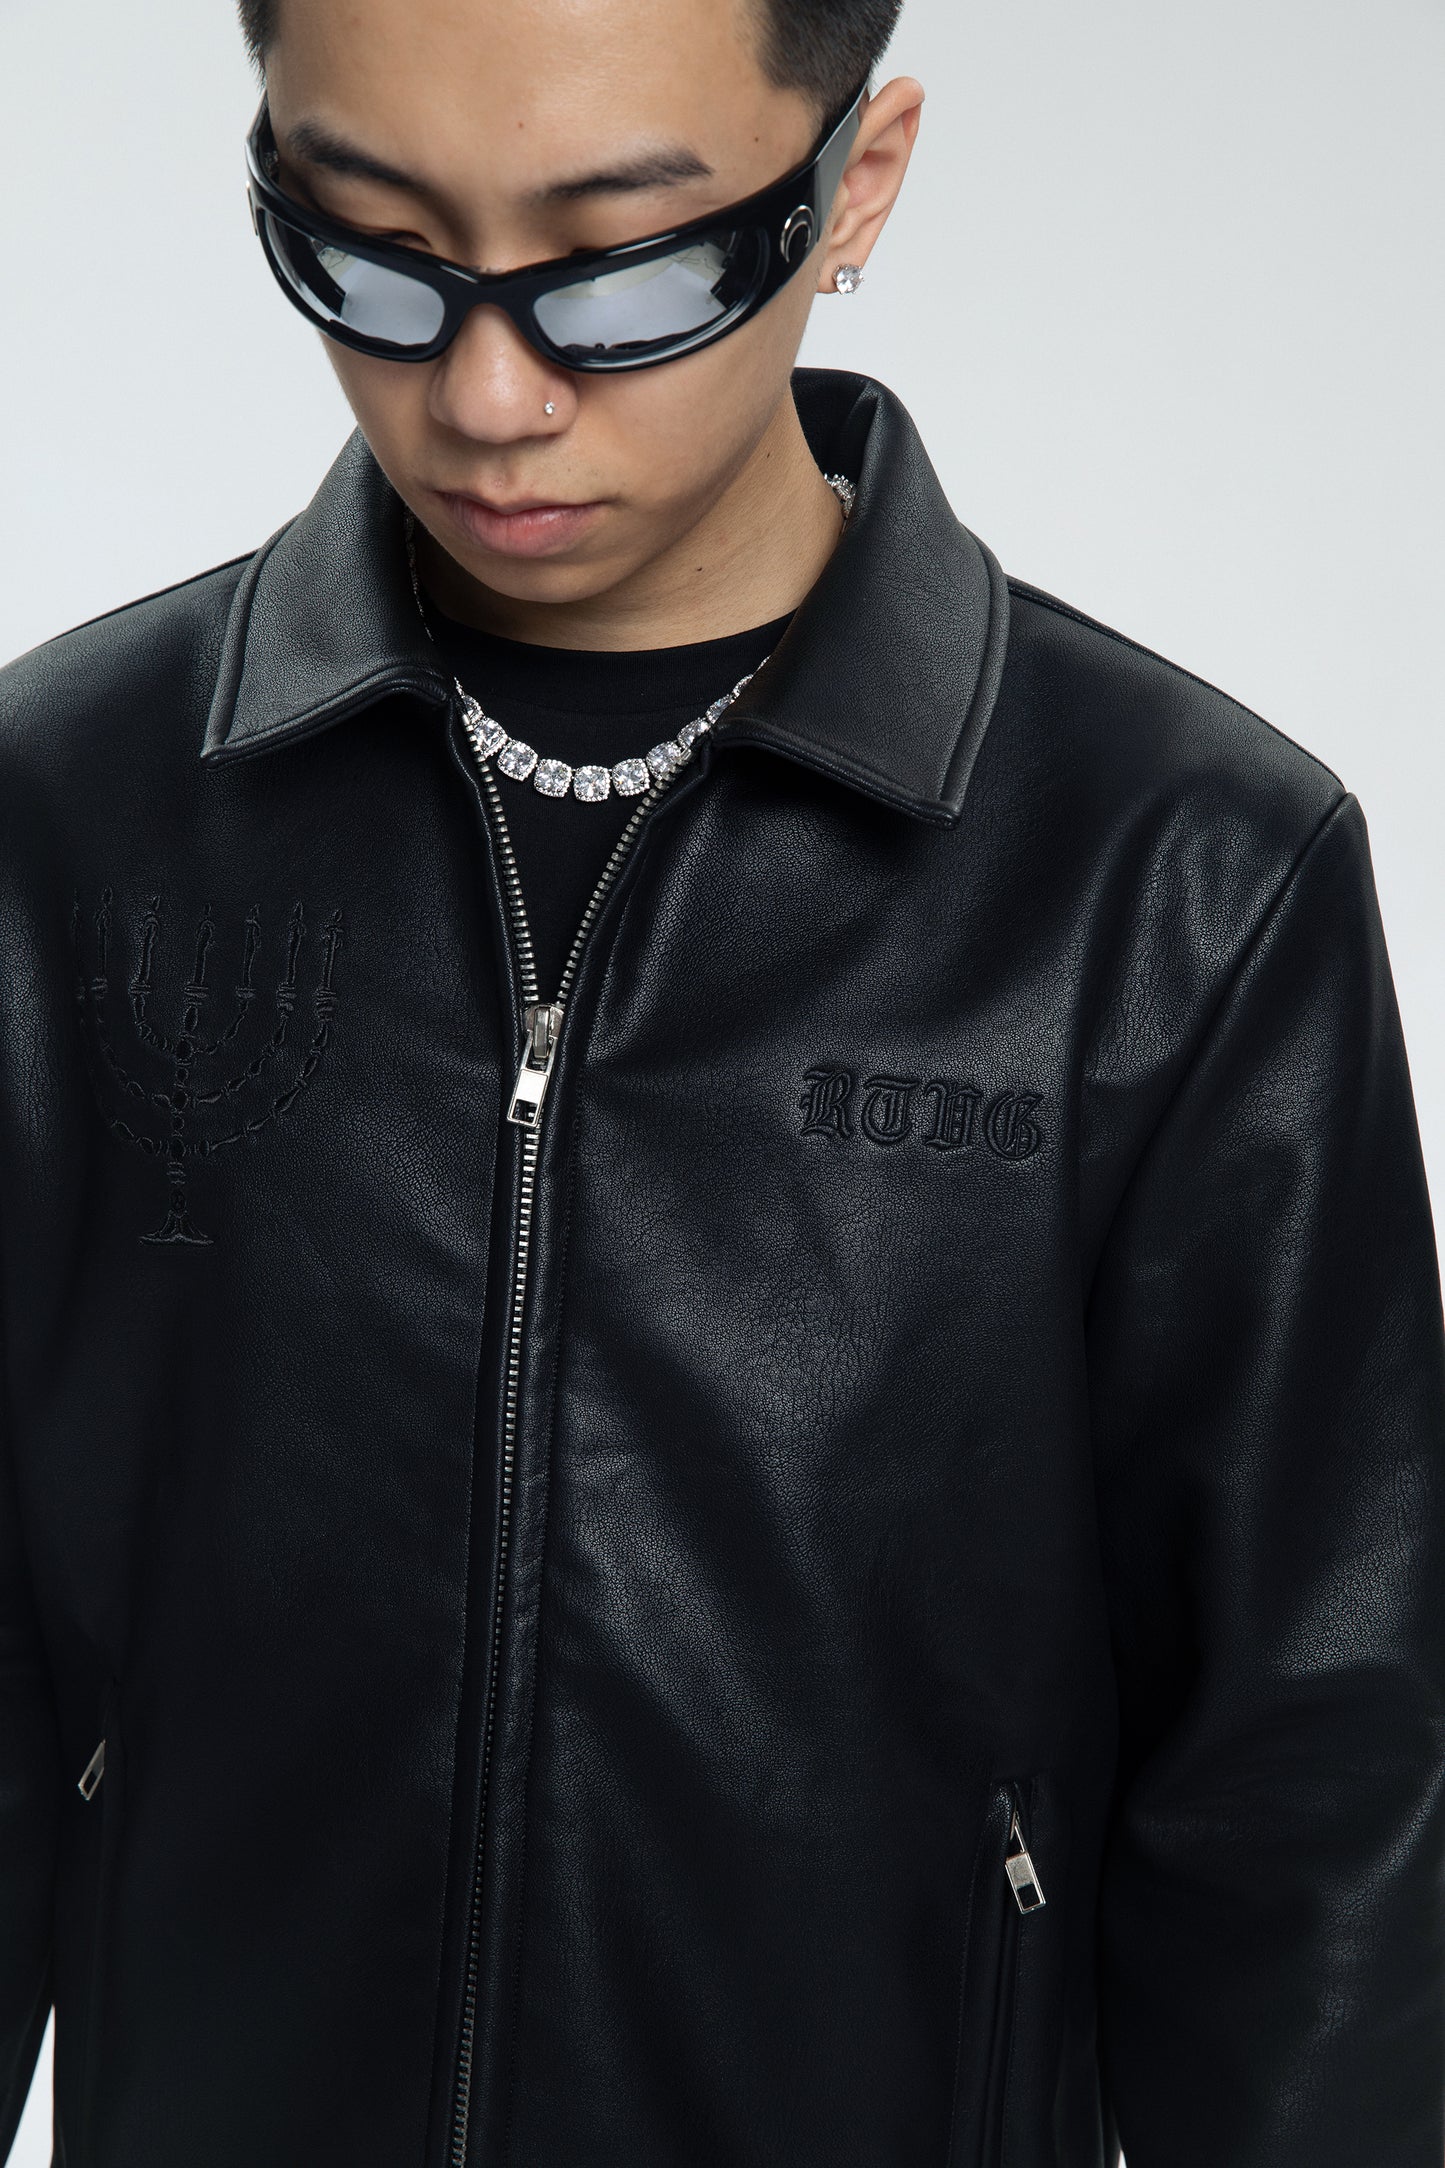 RTVG Leather Jacket